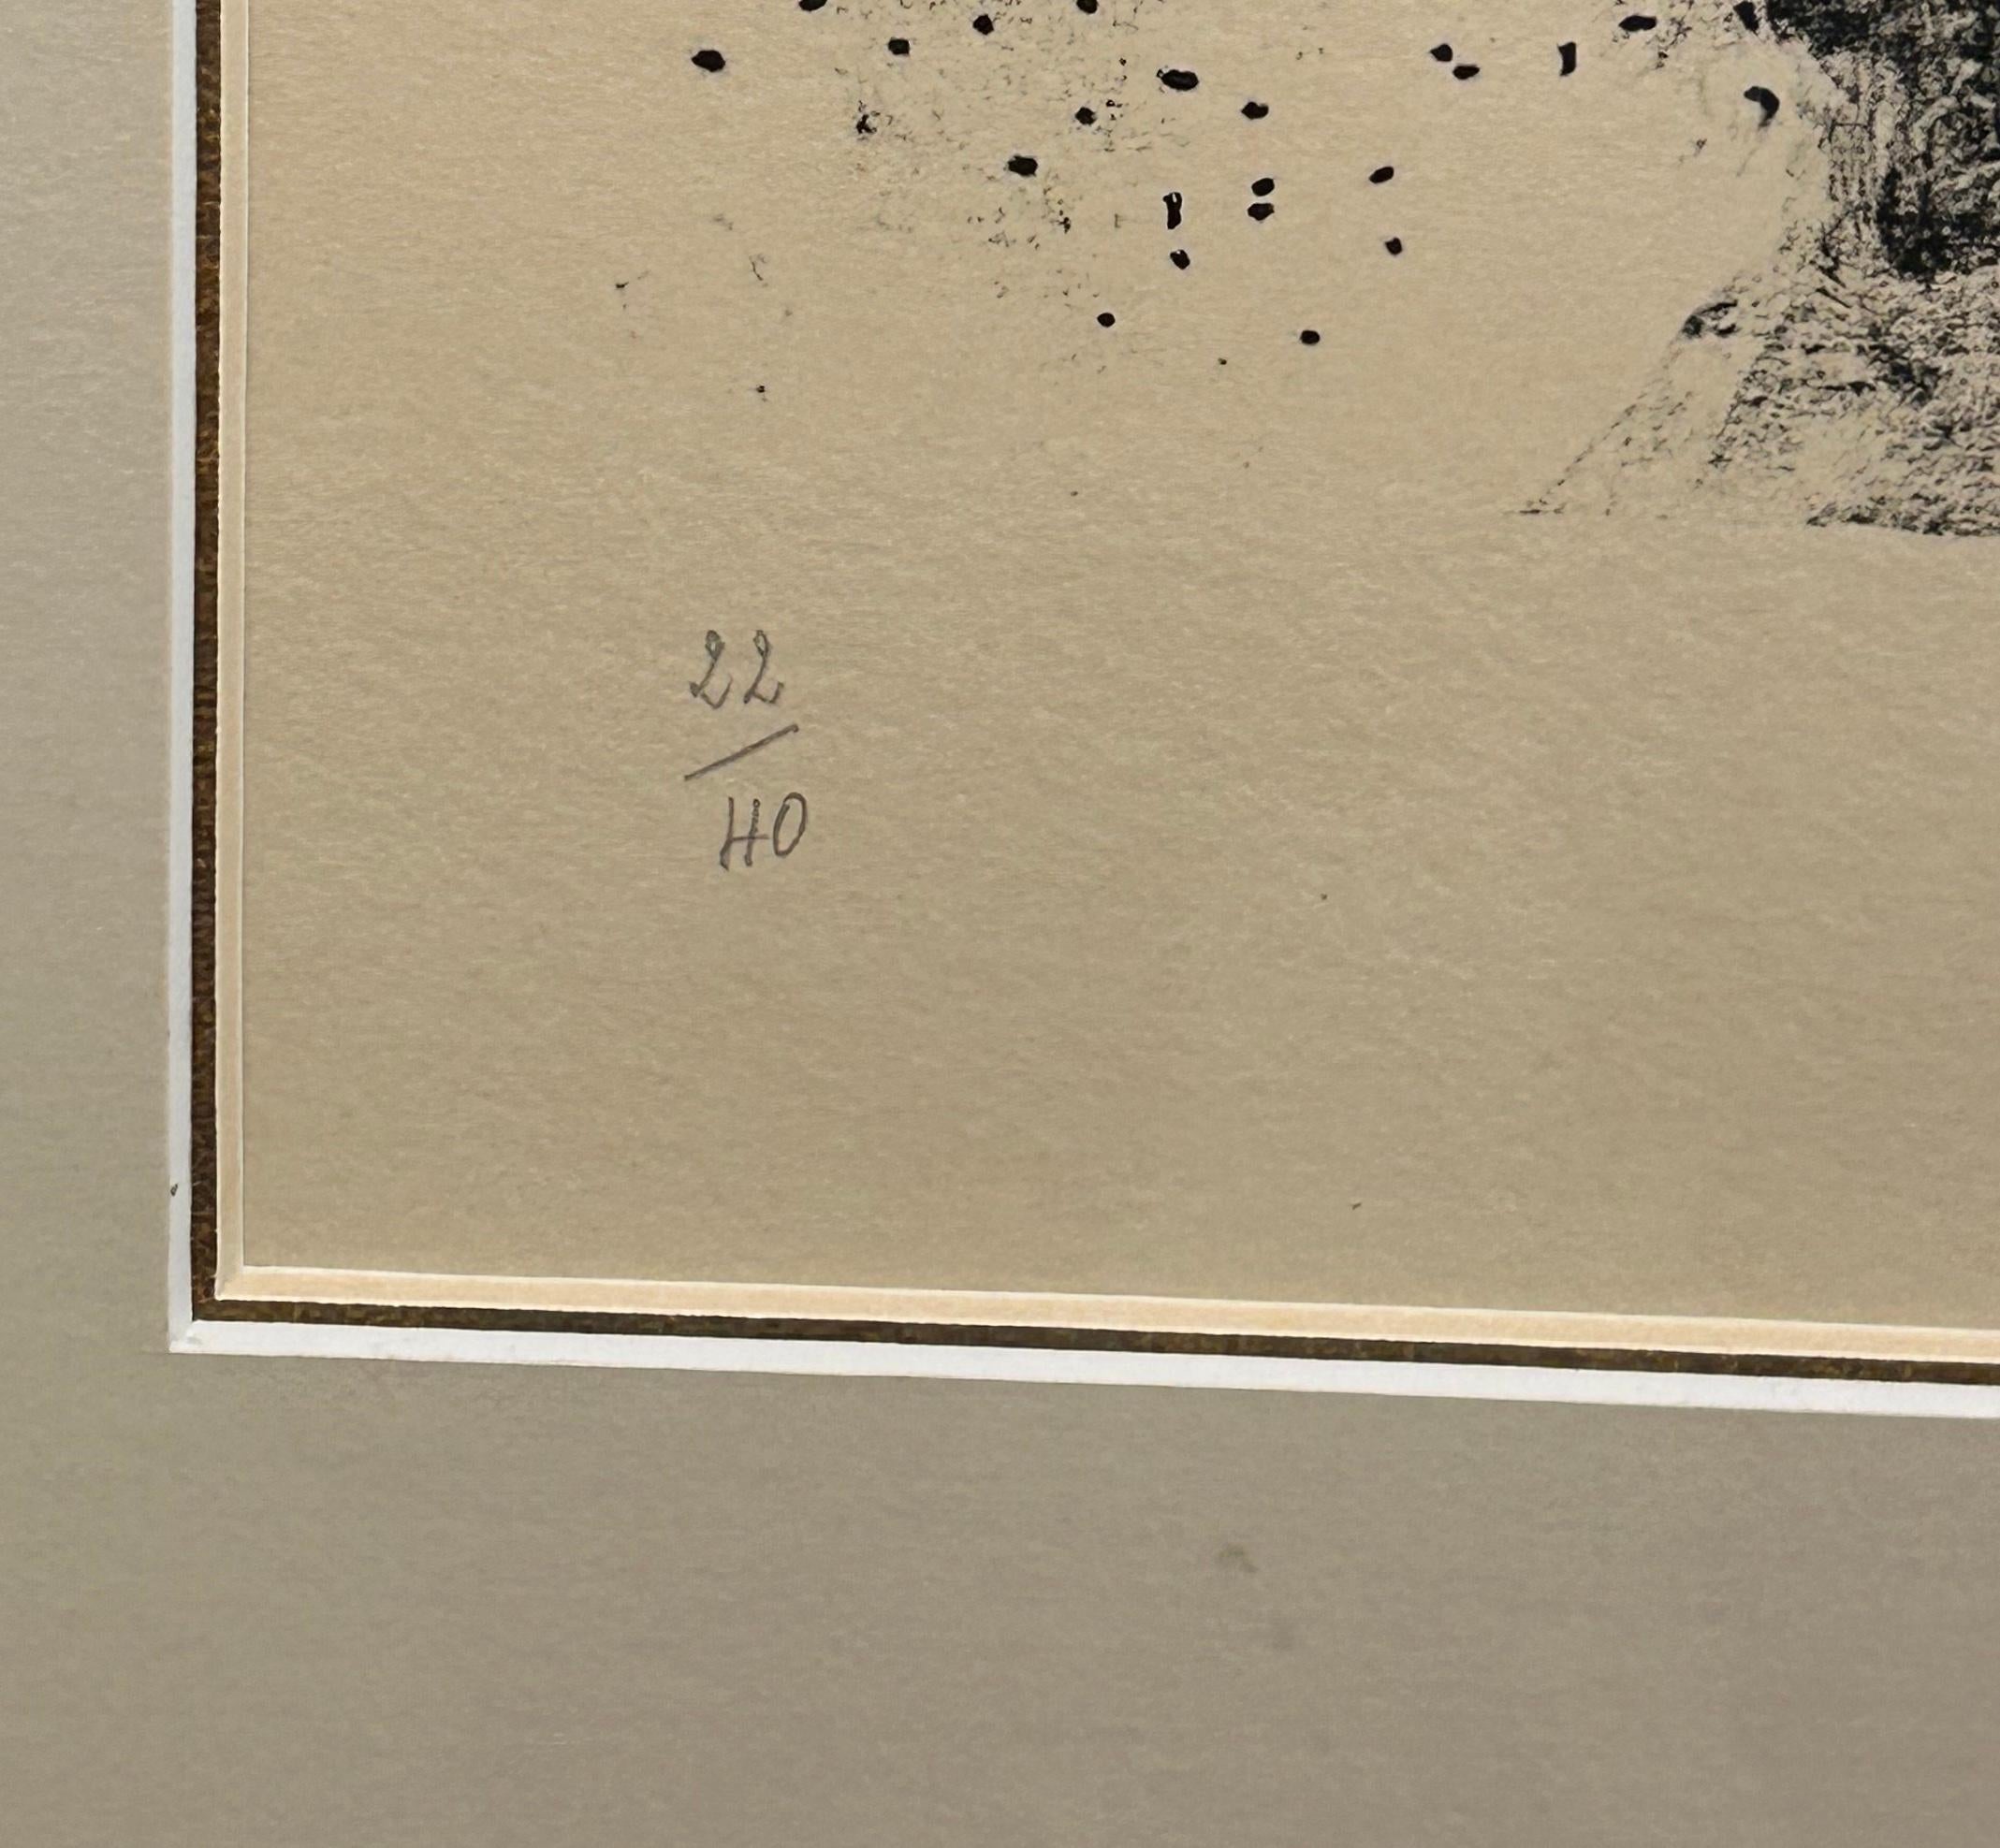 Couple a l'Oiseau (Pärchen mit Vogel). Schwarz-Weiß-Lithographie auf Arches-Papier von Marc Chagall aus dem Jahr 1959, gedruckt von Mourlot in Paris. Vom Künstler mit Bleistift signiert und nummeriert, Auflage 22/40. Das Bild zeigt eine Frau mit